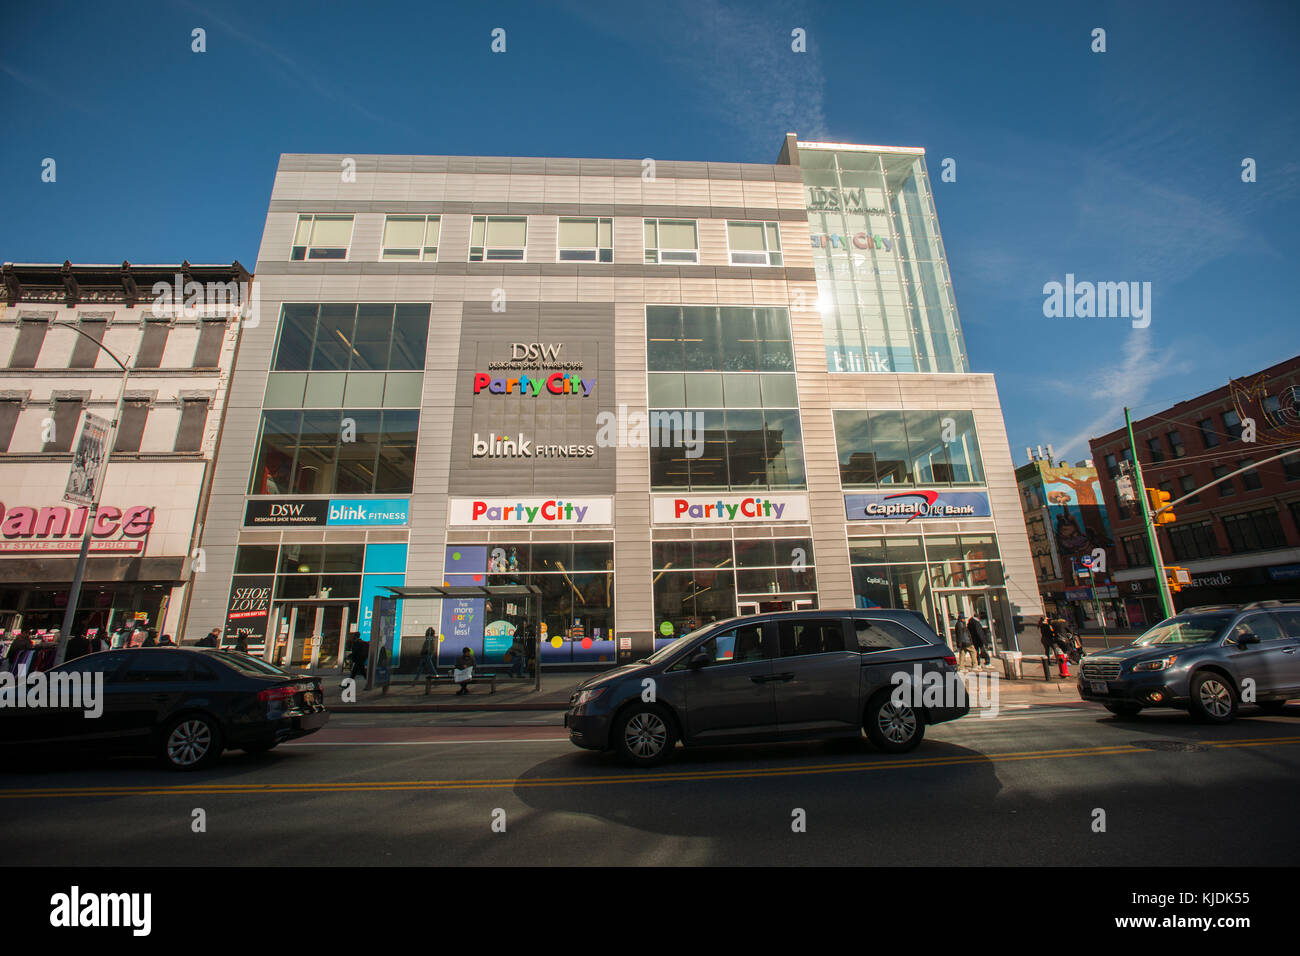 Un centro commerciale verticale sul 125th Street in Harlem in new york contiene più catene di negozi tra cui un blink fitness, città in festa, DSW e un capitale in una banca, visto il martedì, novembre 21, 2017. (© richard b. levine) Foto Stock